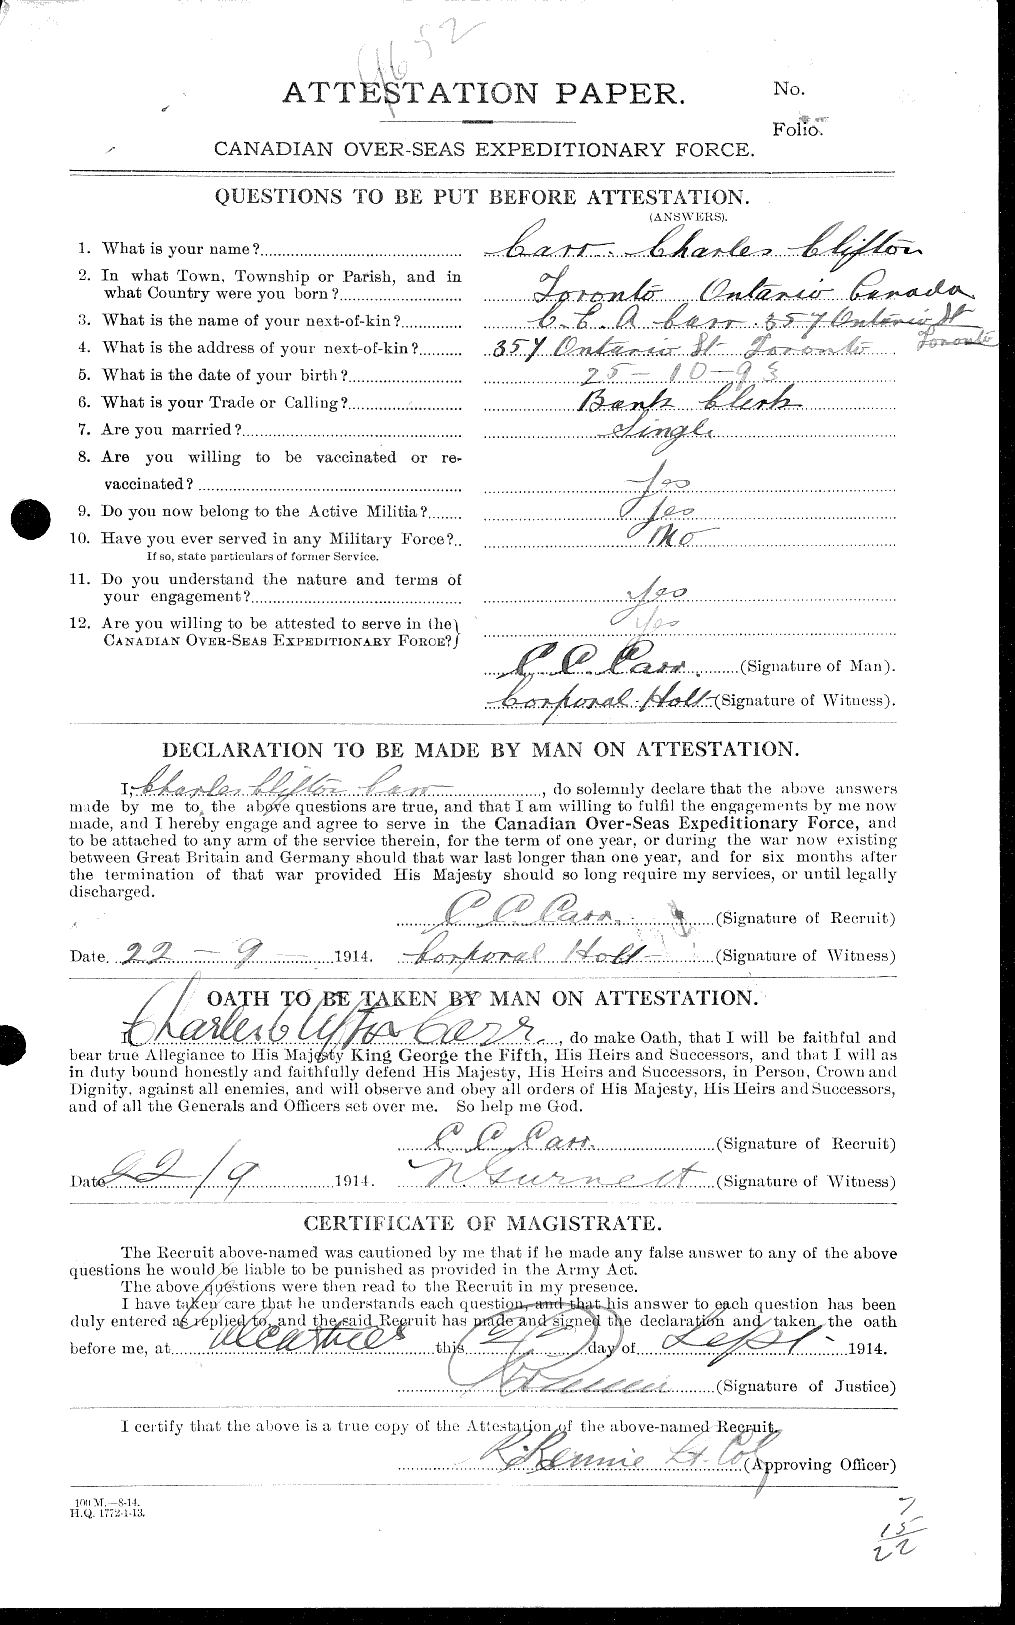 Dossiers du Personnel de la Première Guerre mondiale - CEC 005283a